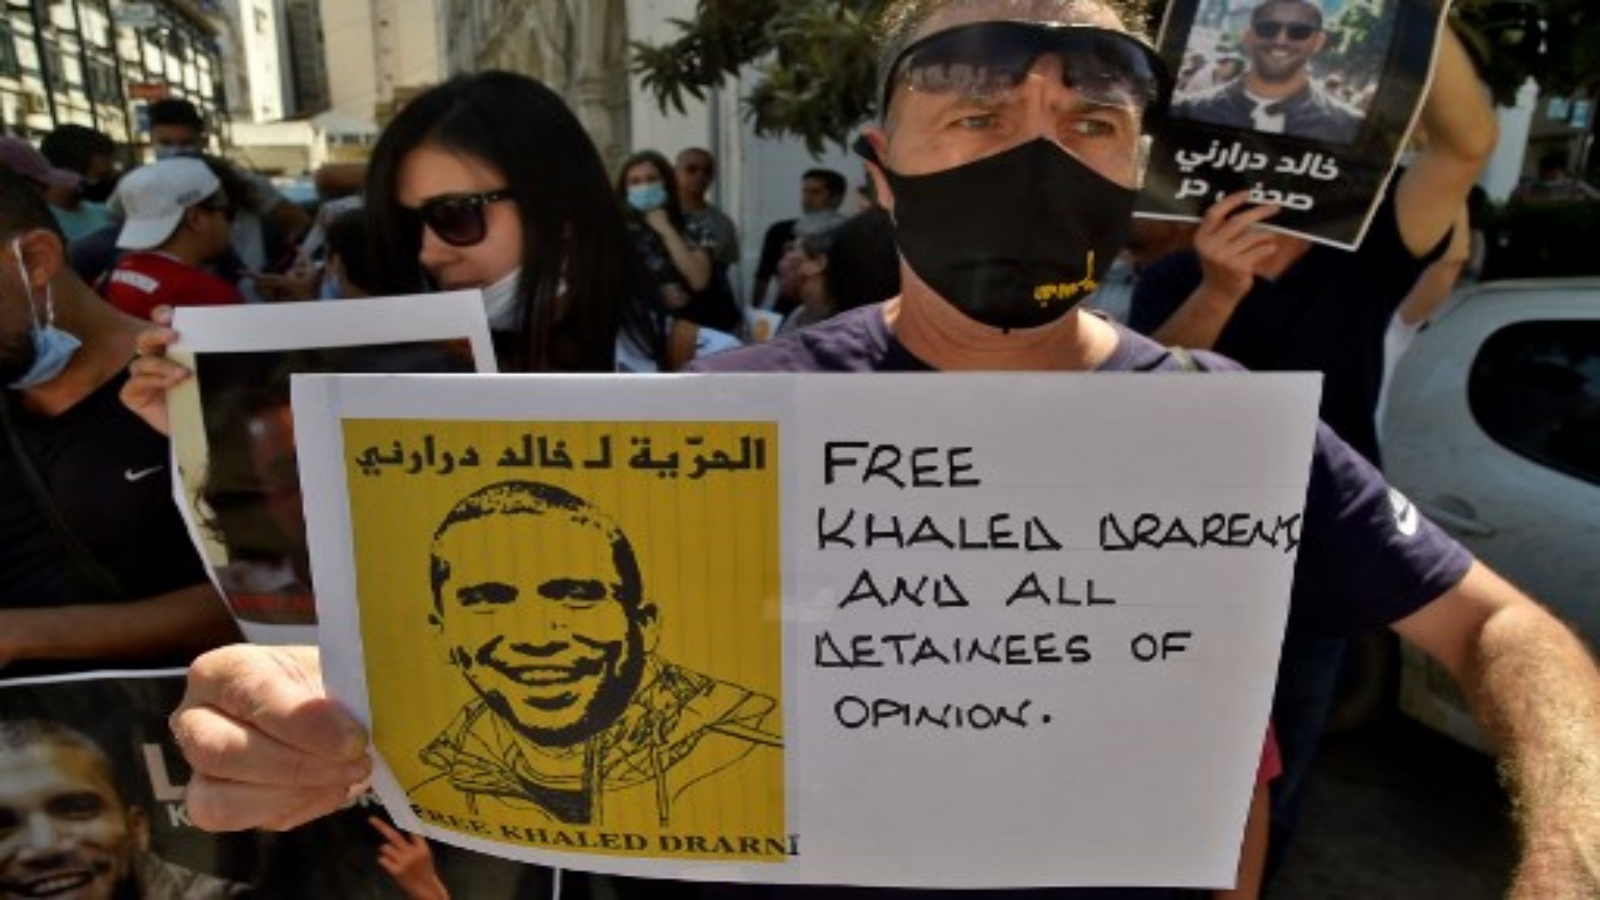 متظاهرون جزائريون يطالبون بالإفراج عن الصحفي خالد دراريني ، في 14 سبتمبر 2020 بالجزائر العاصمة